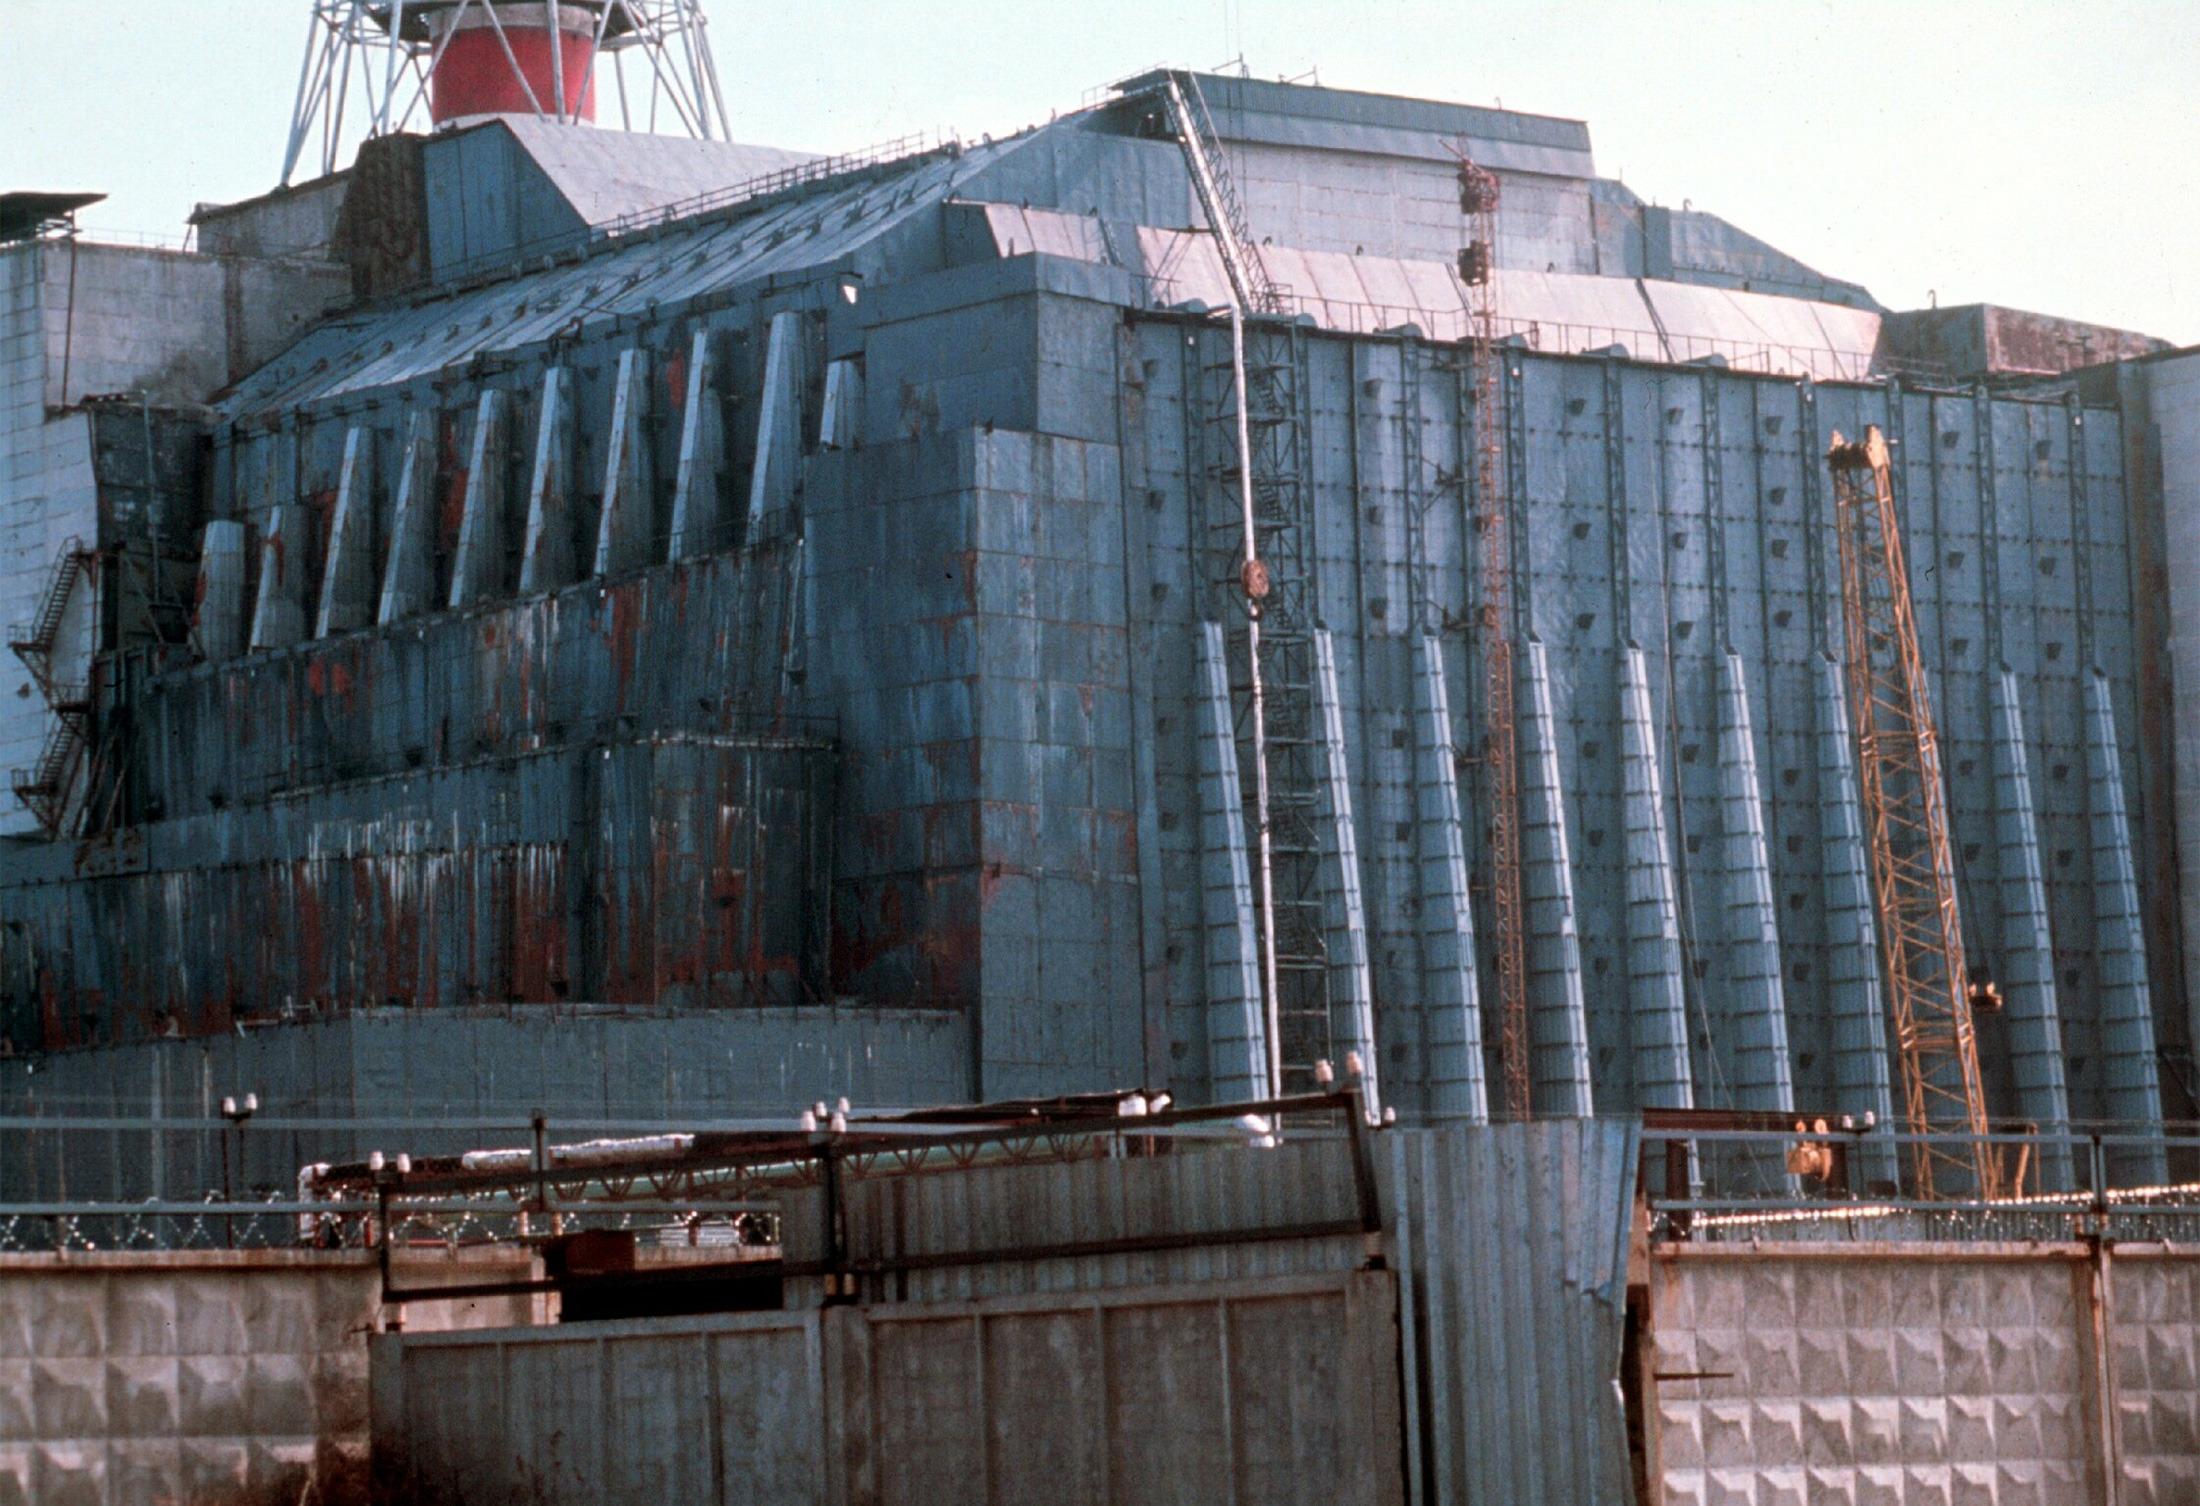 Etter en katastrofal ulykke i Tsjernobyl-kraftverkets reaktor nummer fire i 1986 ble denne enorme betongsarkofagen konstruert i full fart rundt reaktoren, for å hindre radioaktivt materiale i å slippe ut. Den er nå i ferd med å erstattes av en enorm stålsarkofag, som skal stå der i minst 100 år fremover.Foto: NTB scanpix